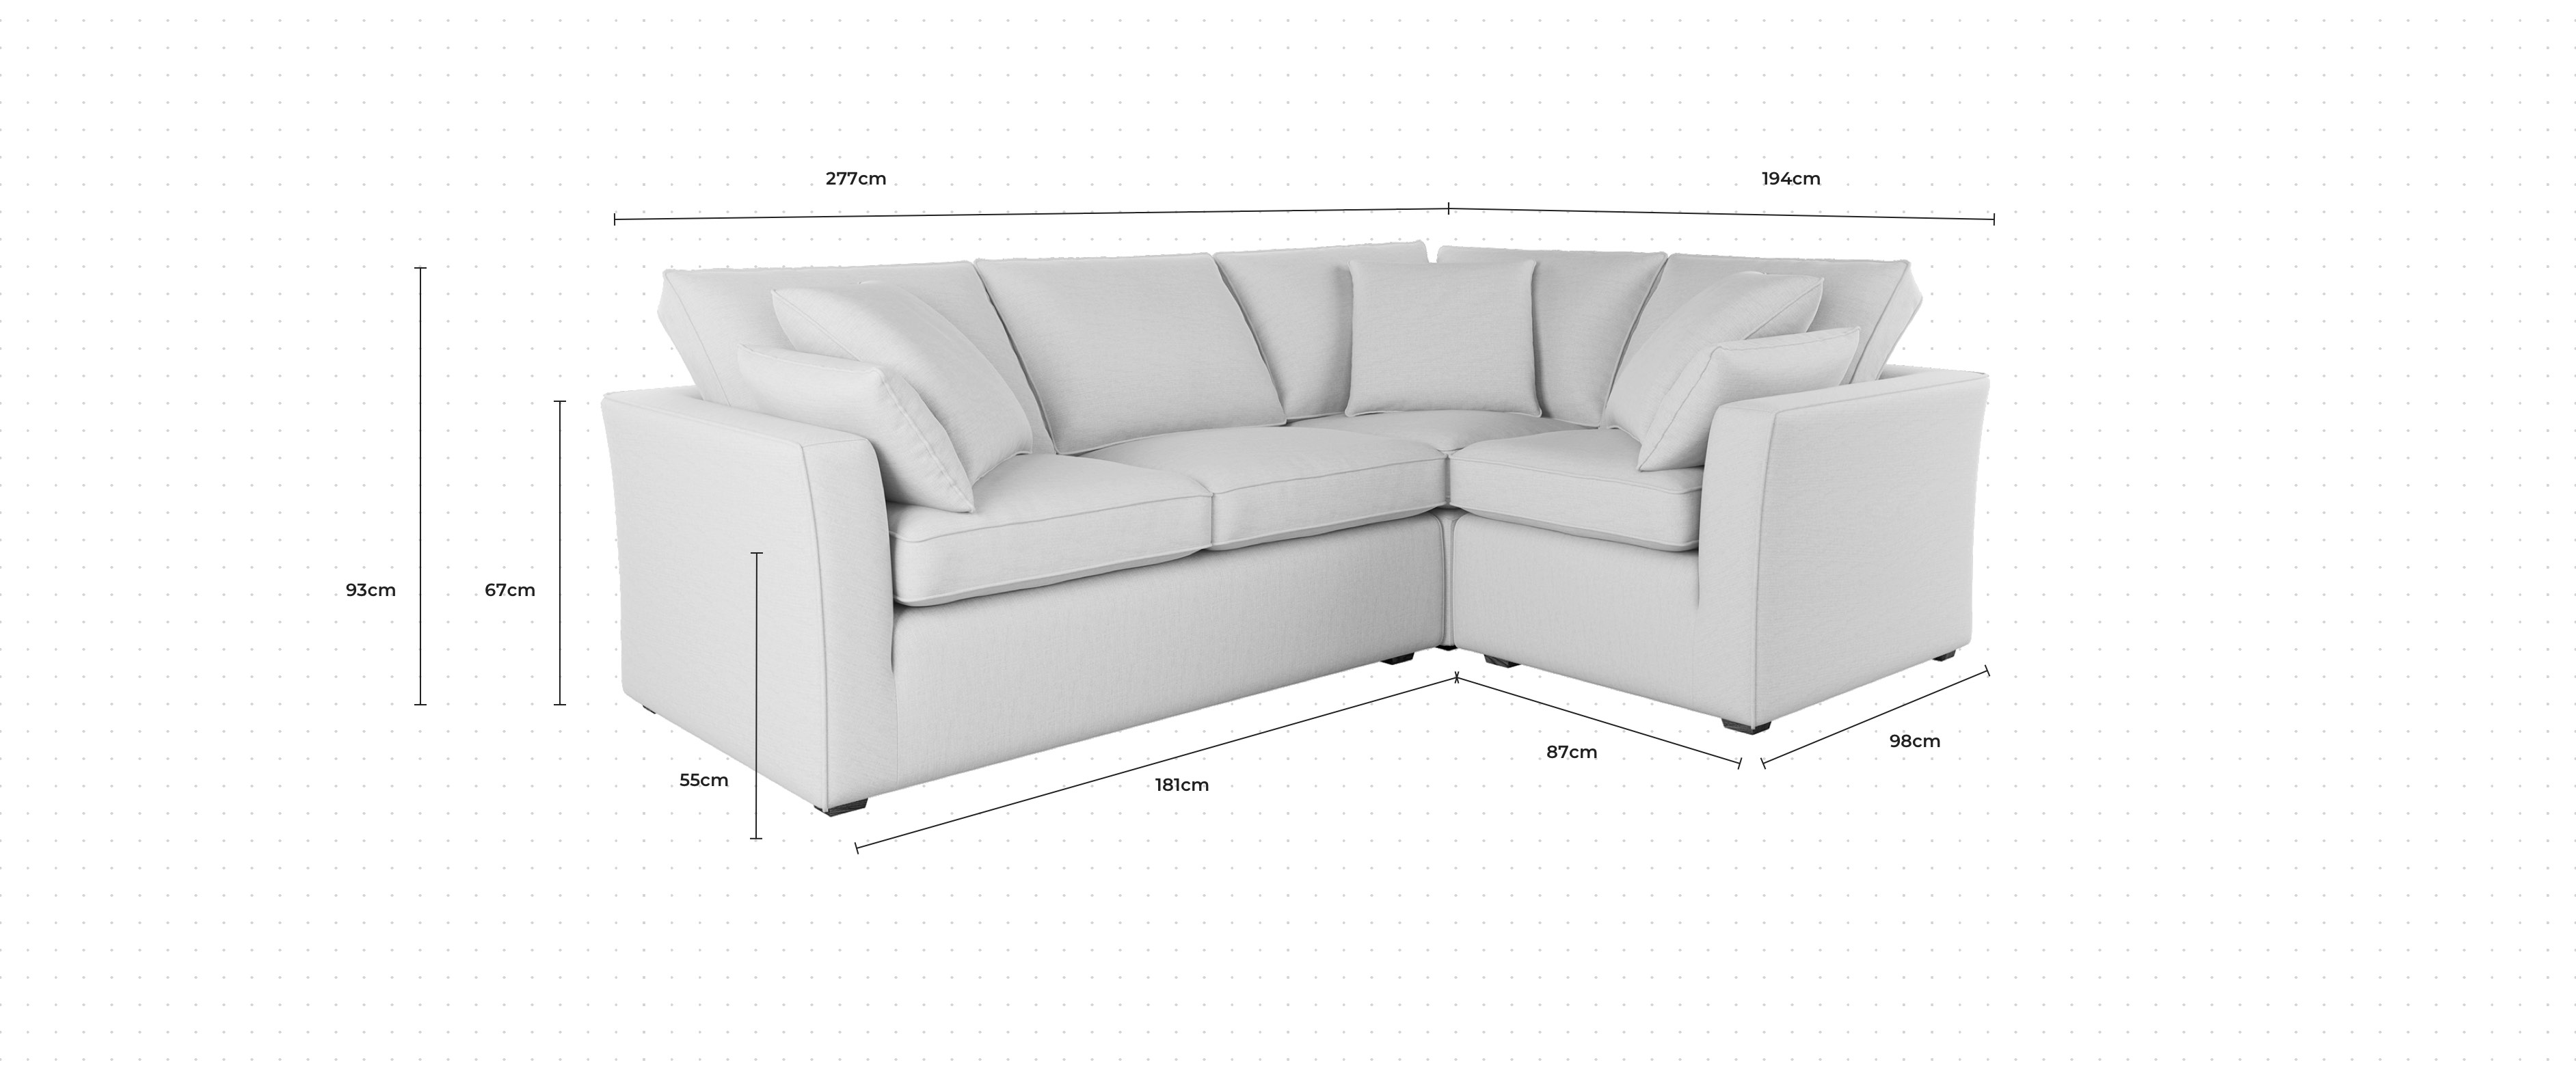 Caruso Corner Sofa RHF dimensions